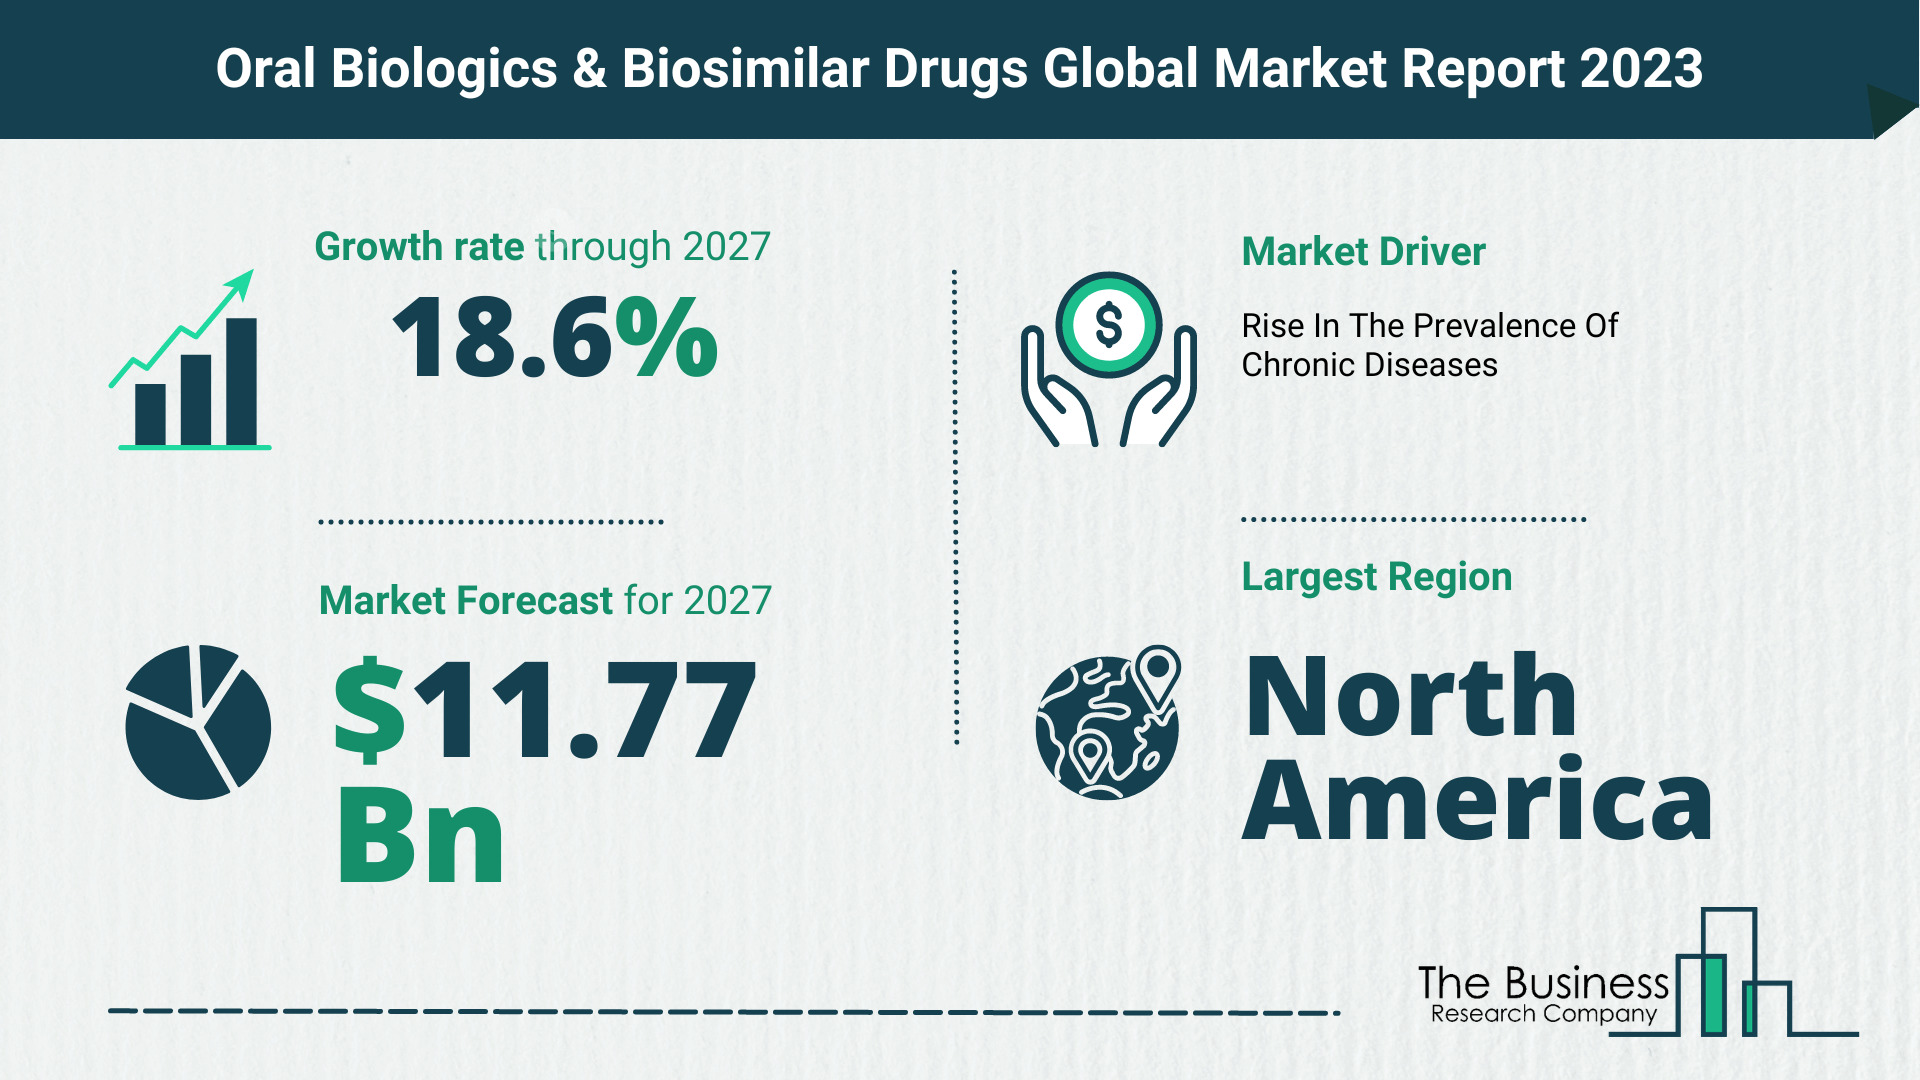 Global Oral Biologics & Biosimilar Drugs Market